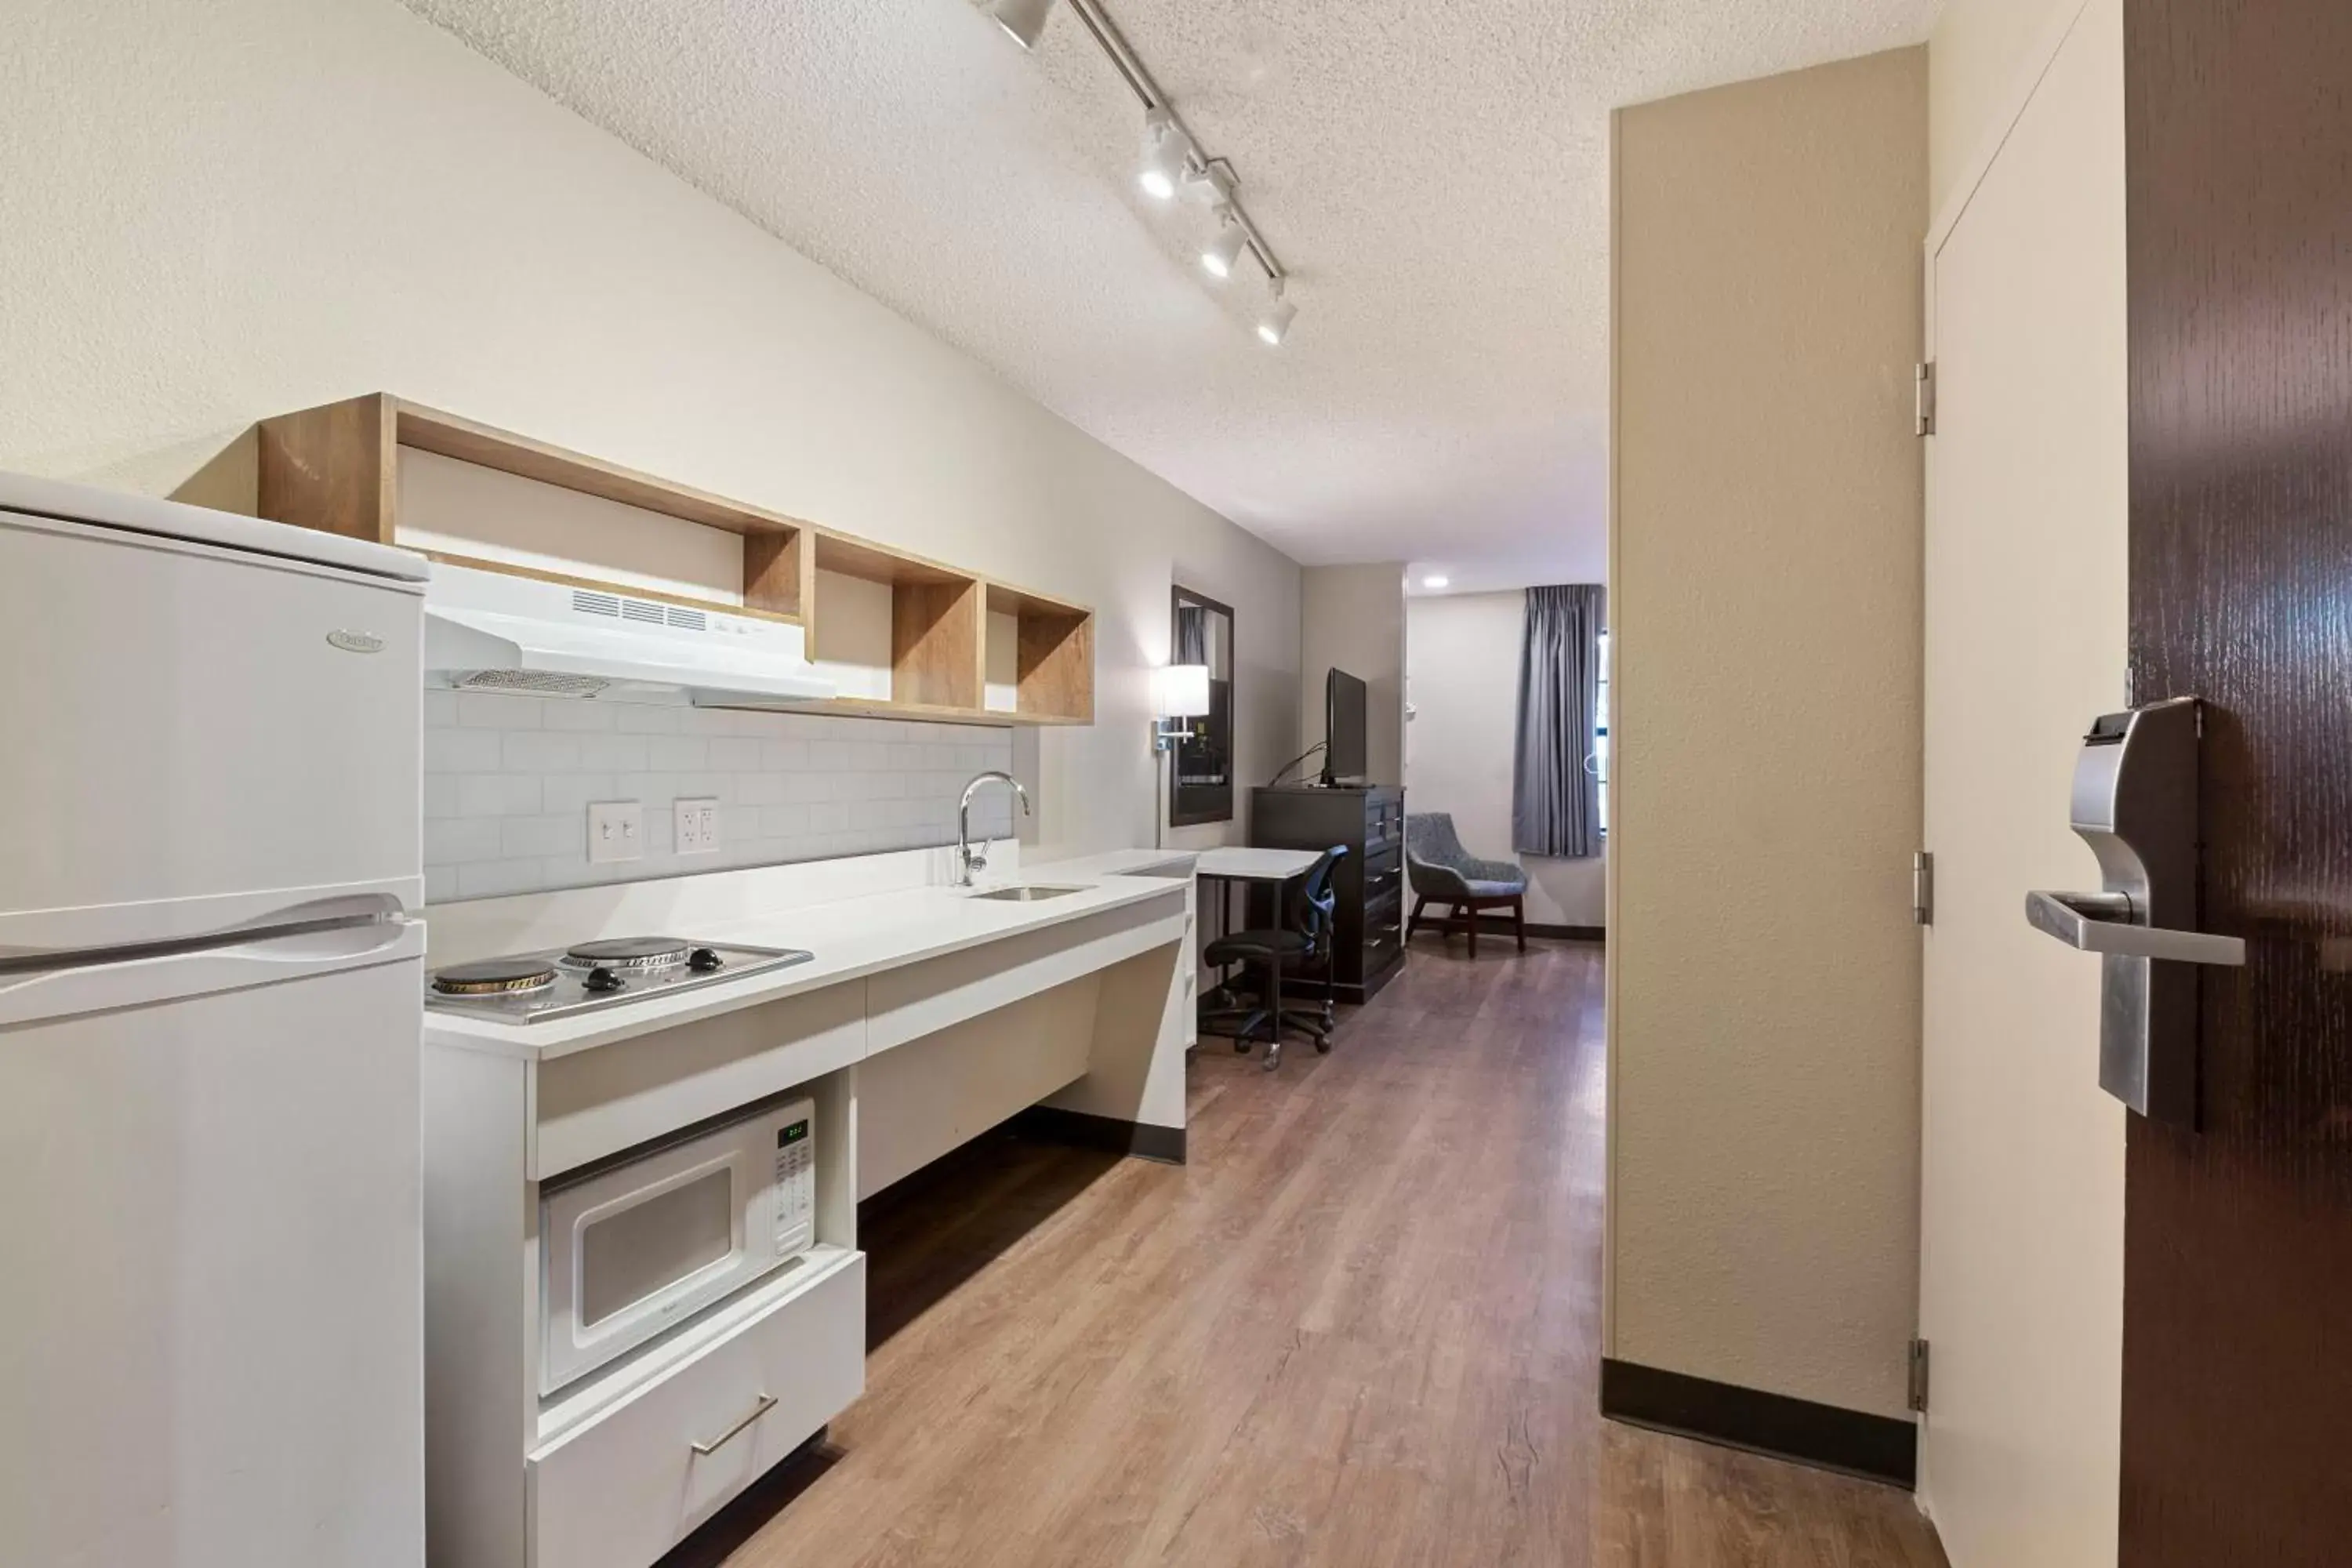 Kitchen or kitchenette, Kitchen/Kitchenette in Extended Stay America Premier Suites - Union City - Dyer St